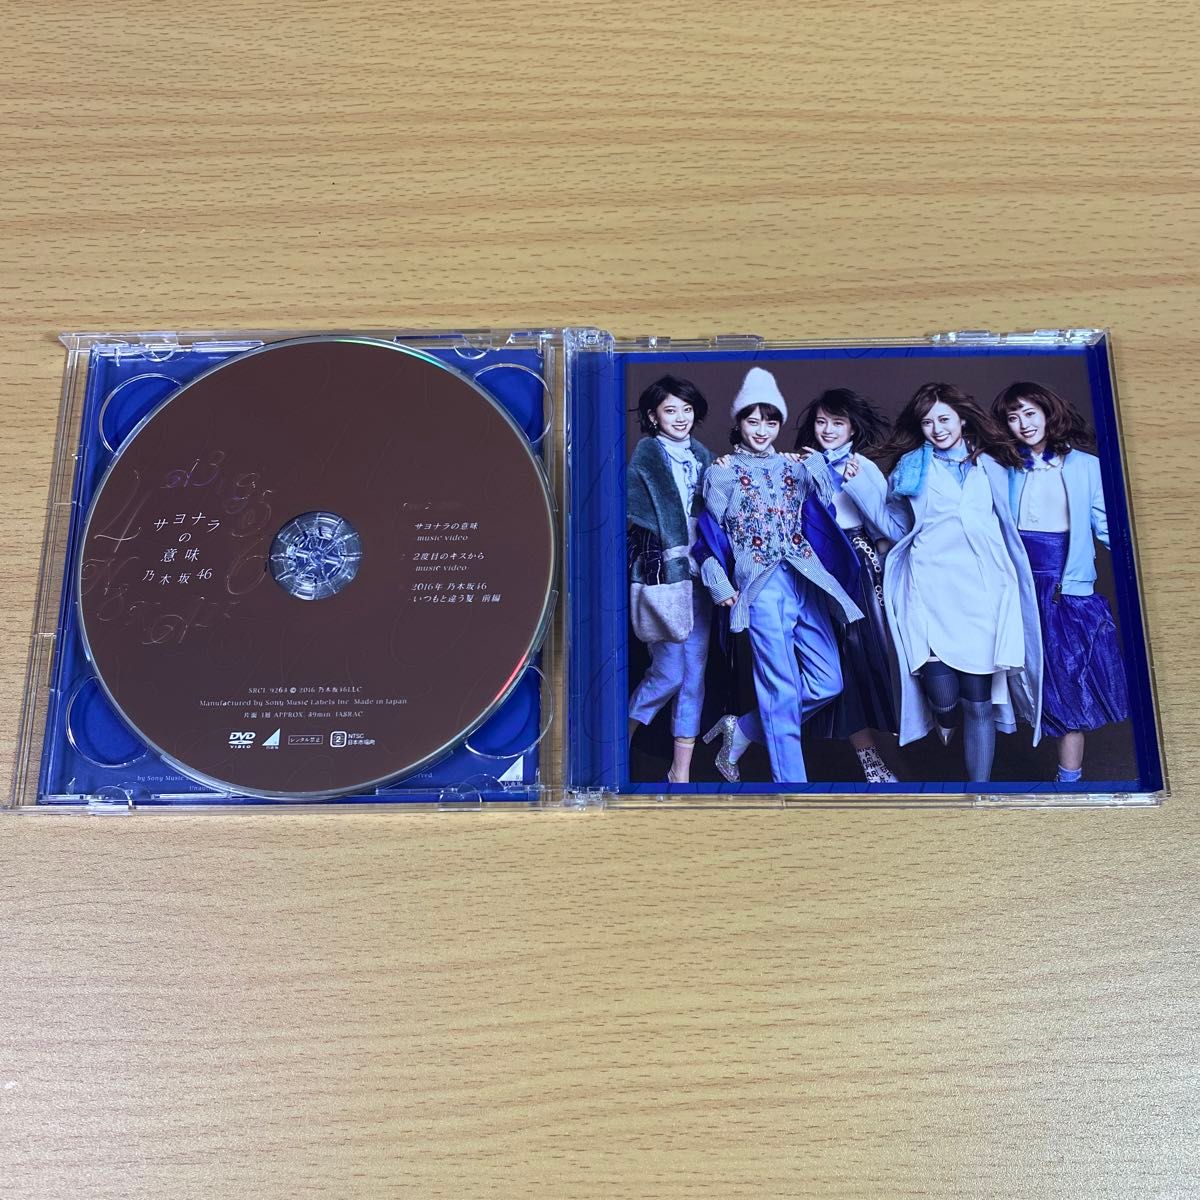 乃木坂46 16thシングル「サヨナラの意味」 初回限定盤TYPE-C 生写真付き